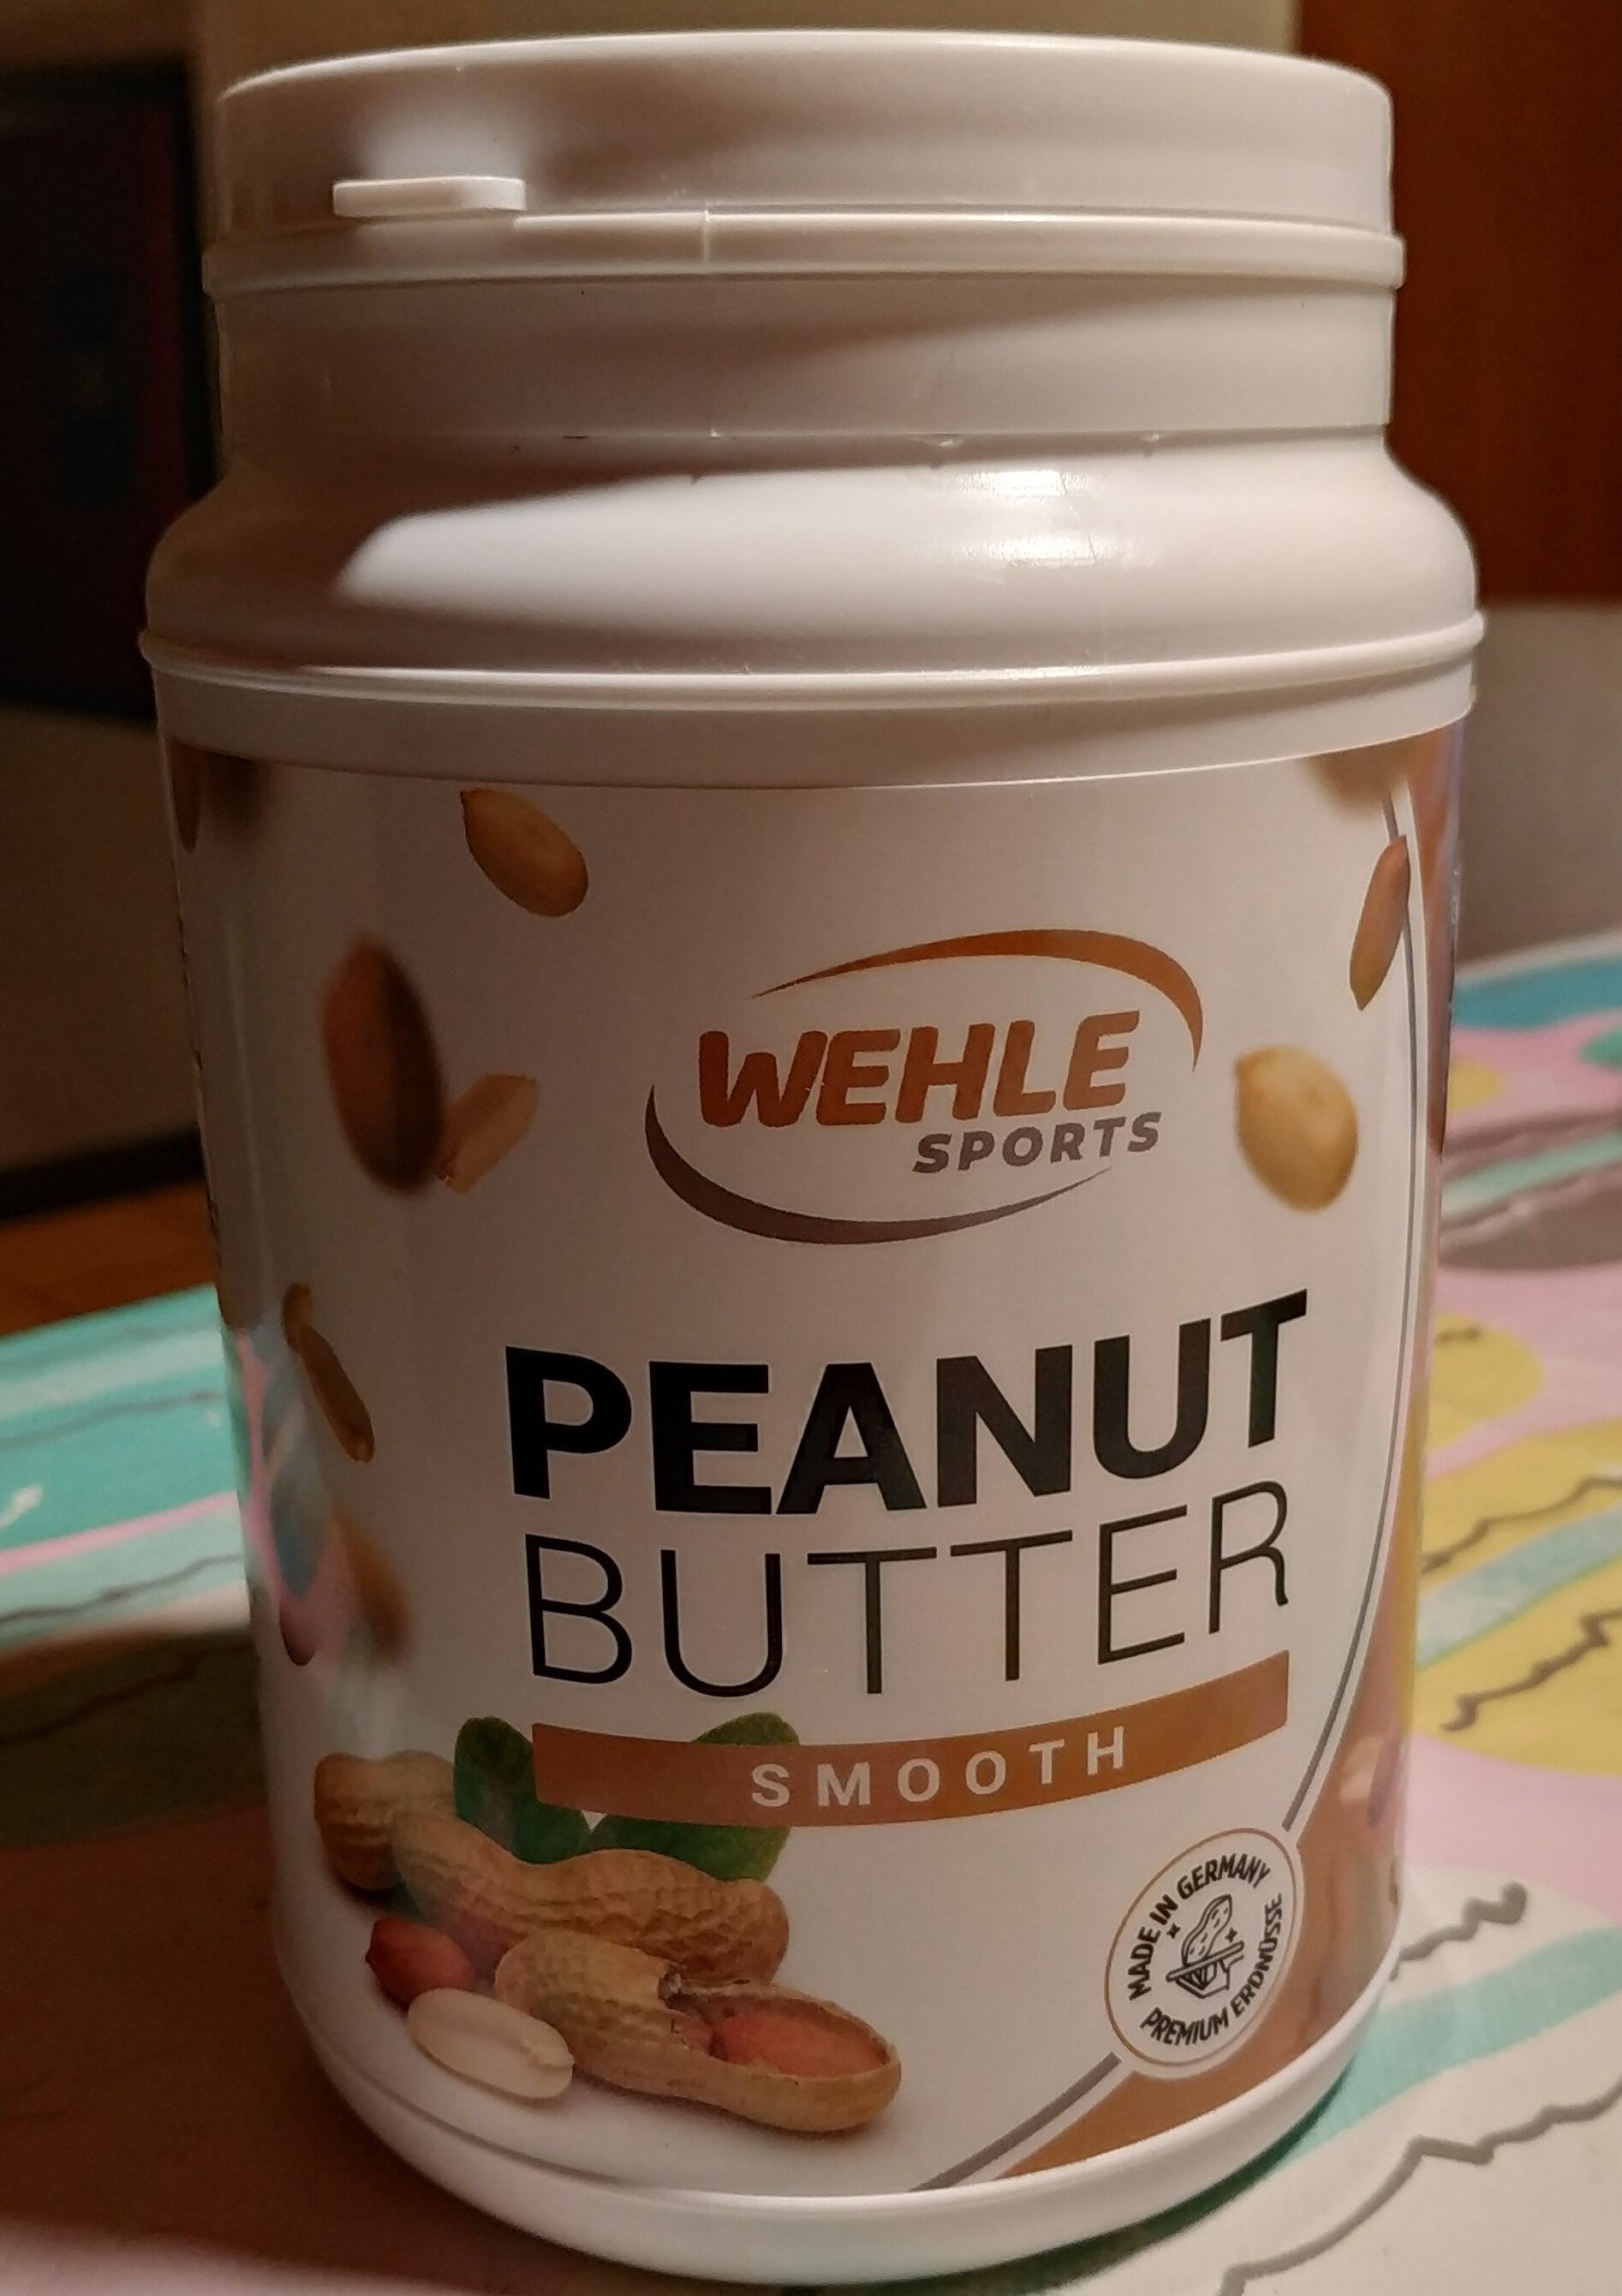 Peanut Butter - Prodotto